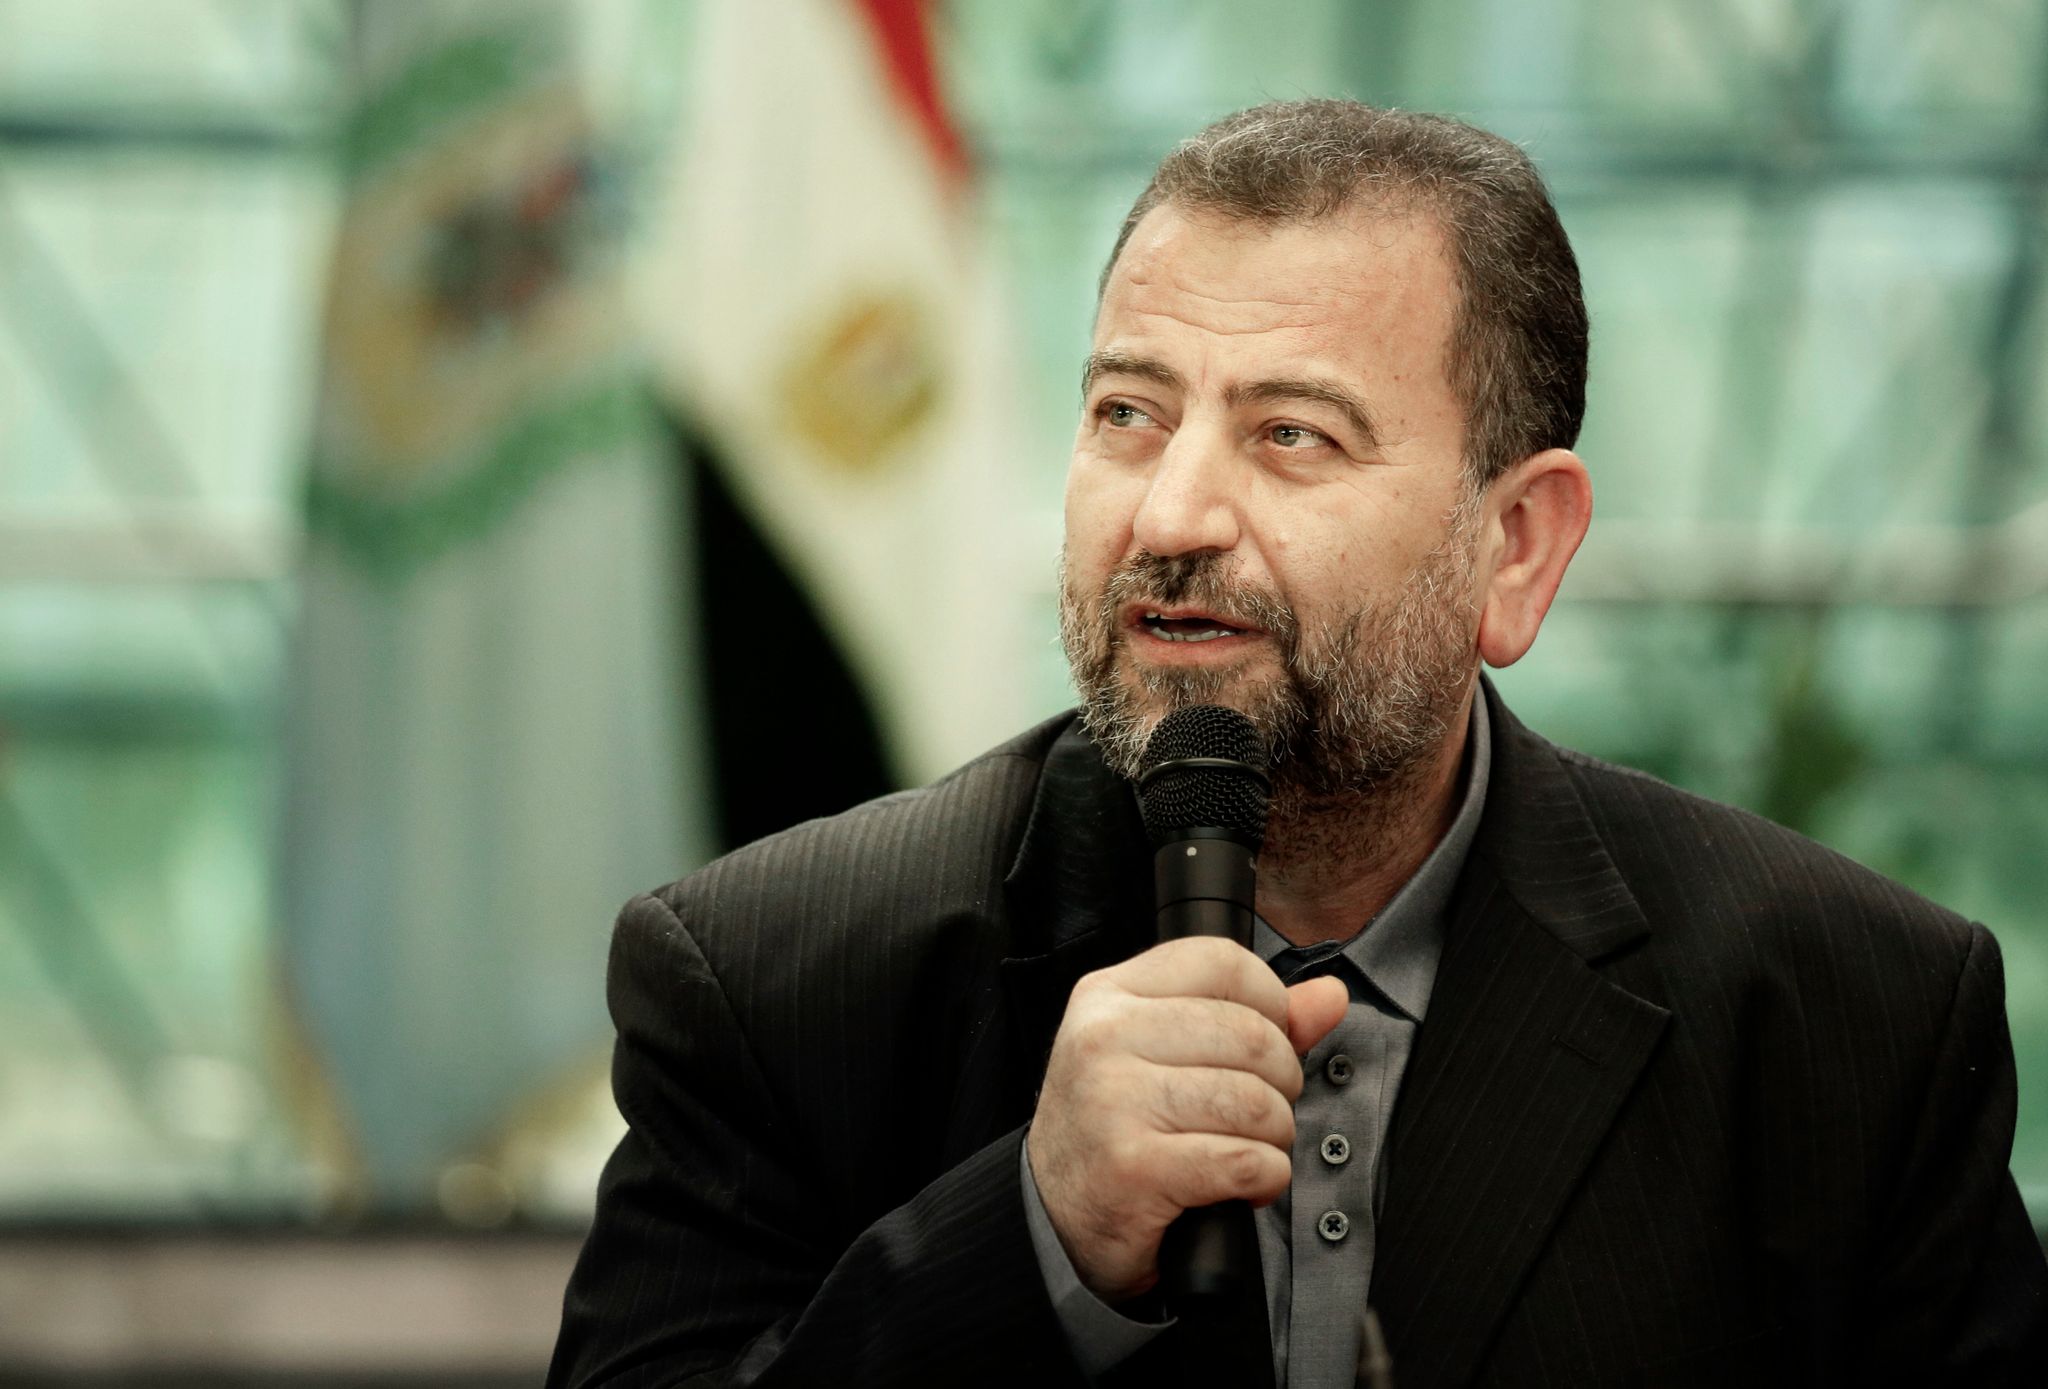 Der stellvertretende Leiter des Politbüros der islamistischen Hamas, Saleh al-Aruri, soll in Beirut ums Leben gekommen sein. Foto: Nariman El-Mofty/AP/dpa